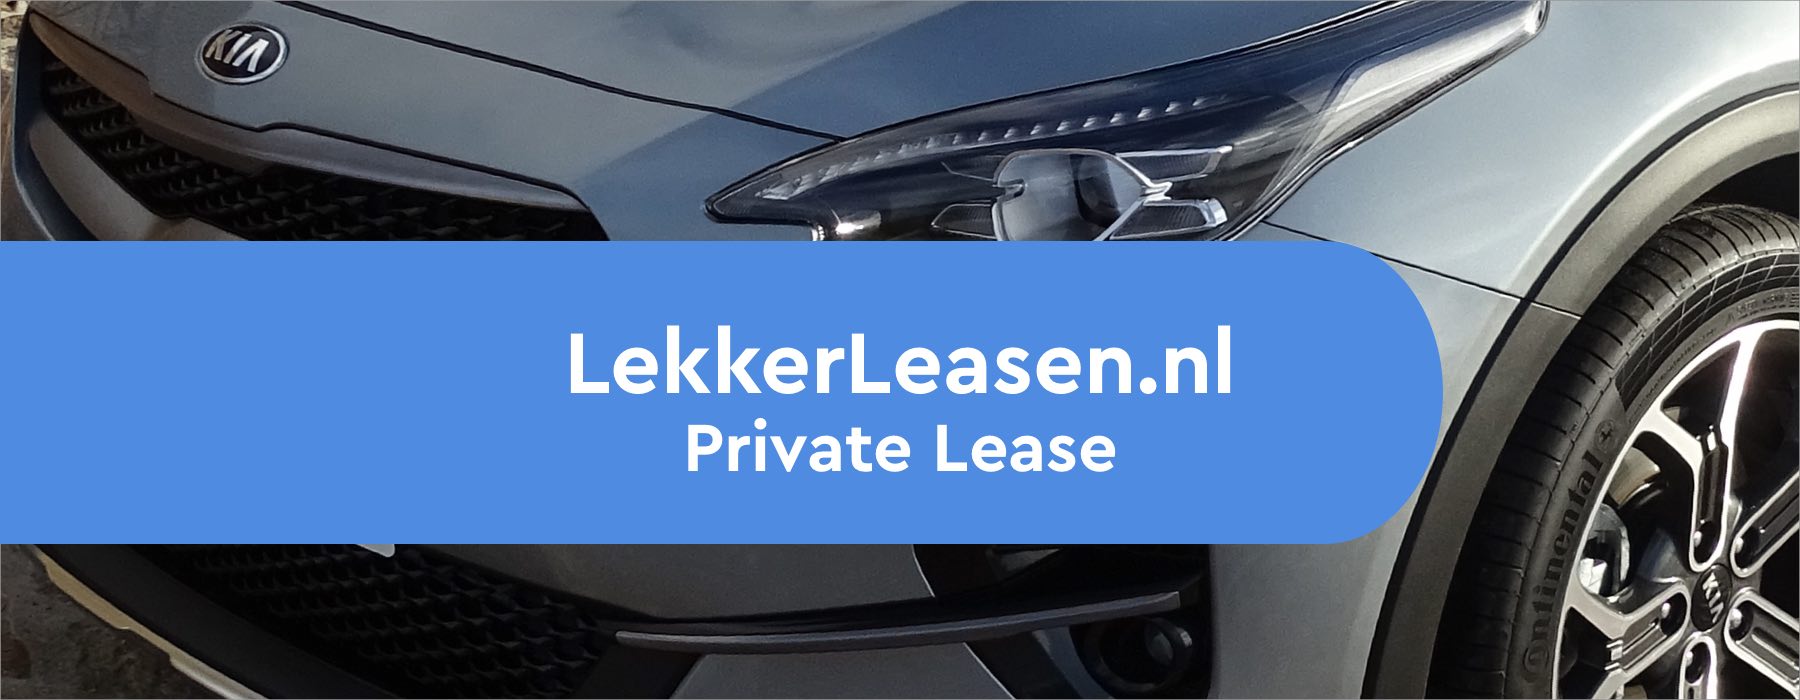 LekkerLeasen.nl Private Lease